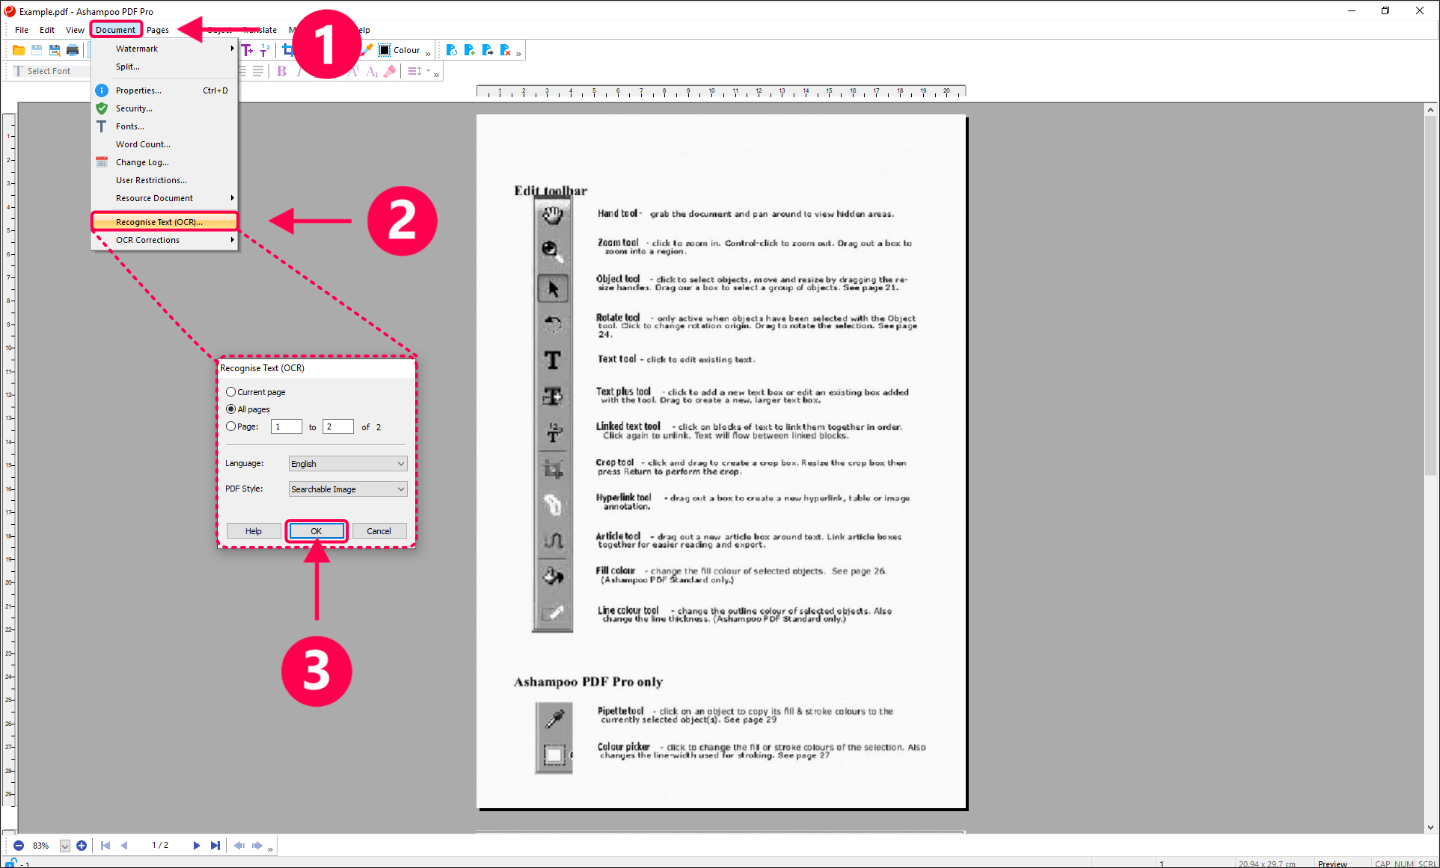 [$ 11.73] Ashampoo PDF Pro 3 Key (Lifetime / 1 PC)